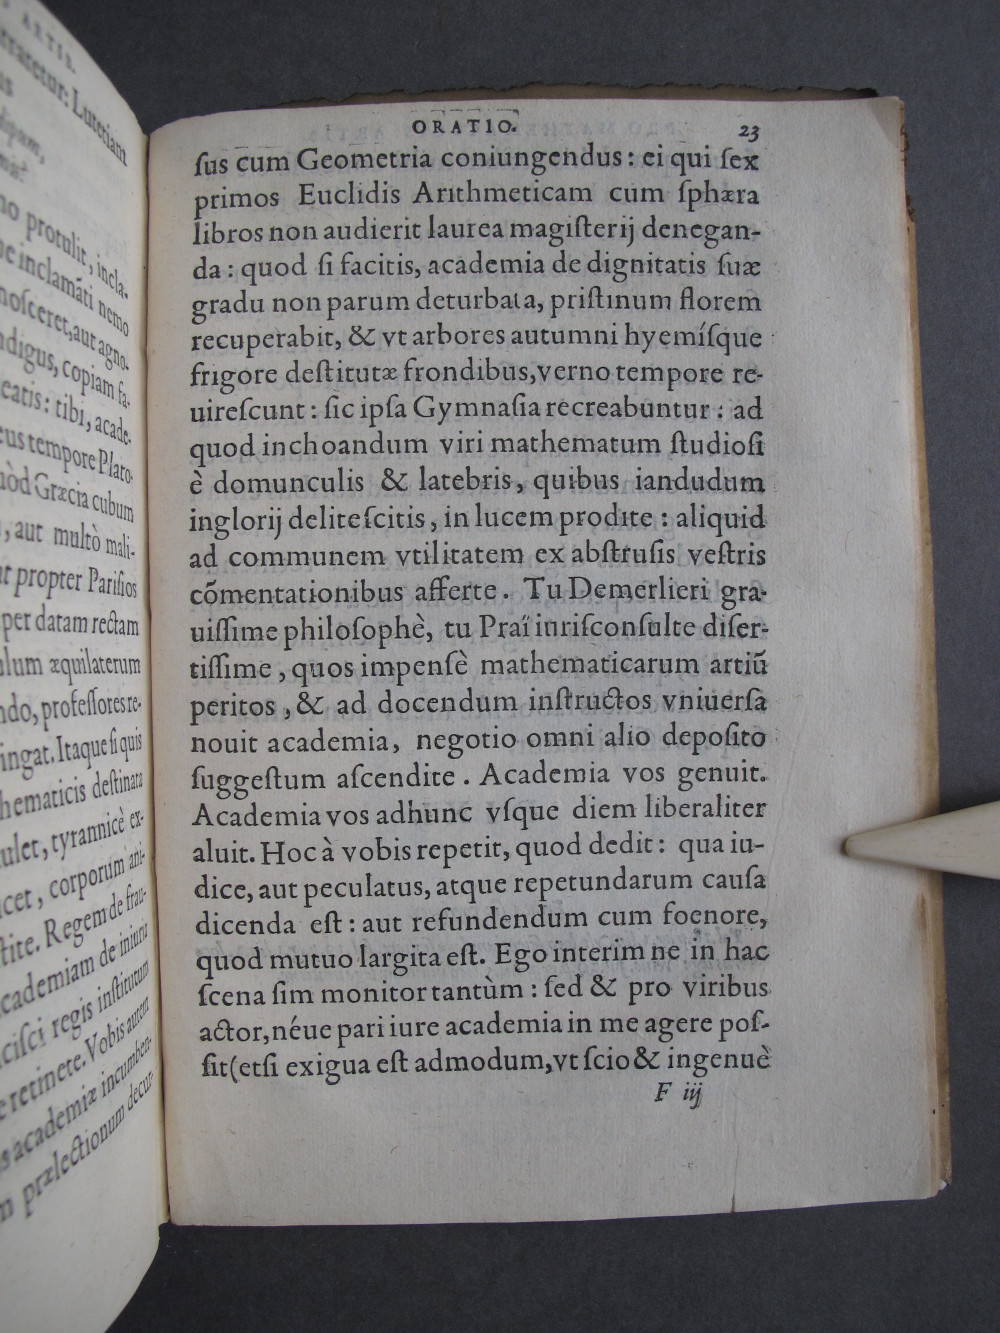 Folio 23 recto